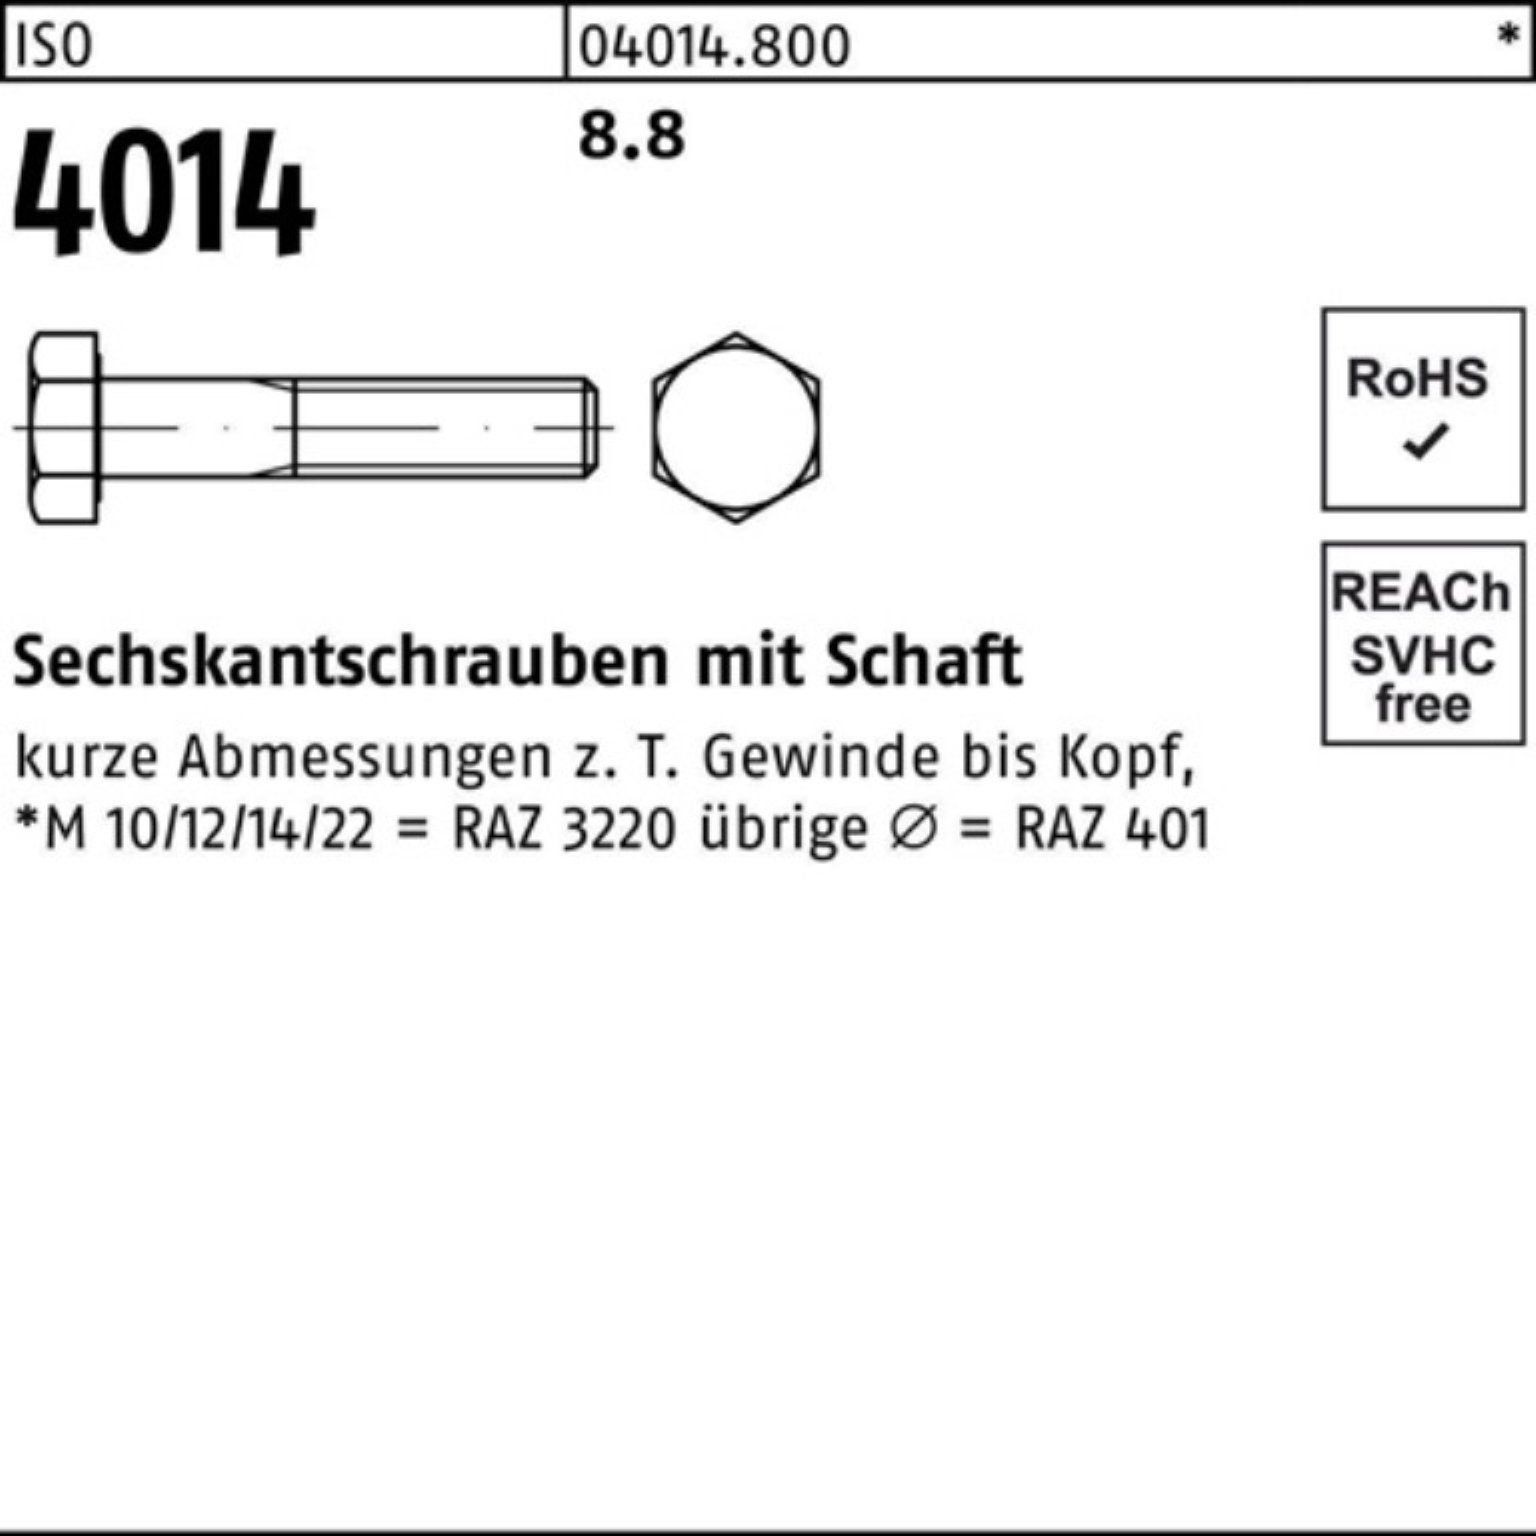 Pack 4014 270 Sechskantschraube M27x 1 Schaft ISO Stück ISO 8.8 Sechskantschraube 100er Bufab